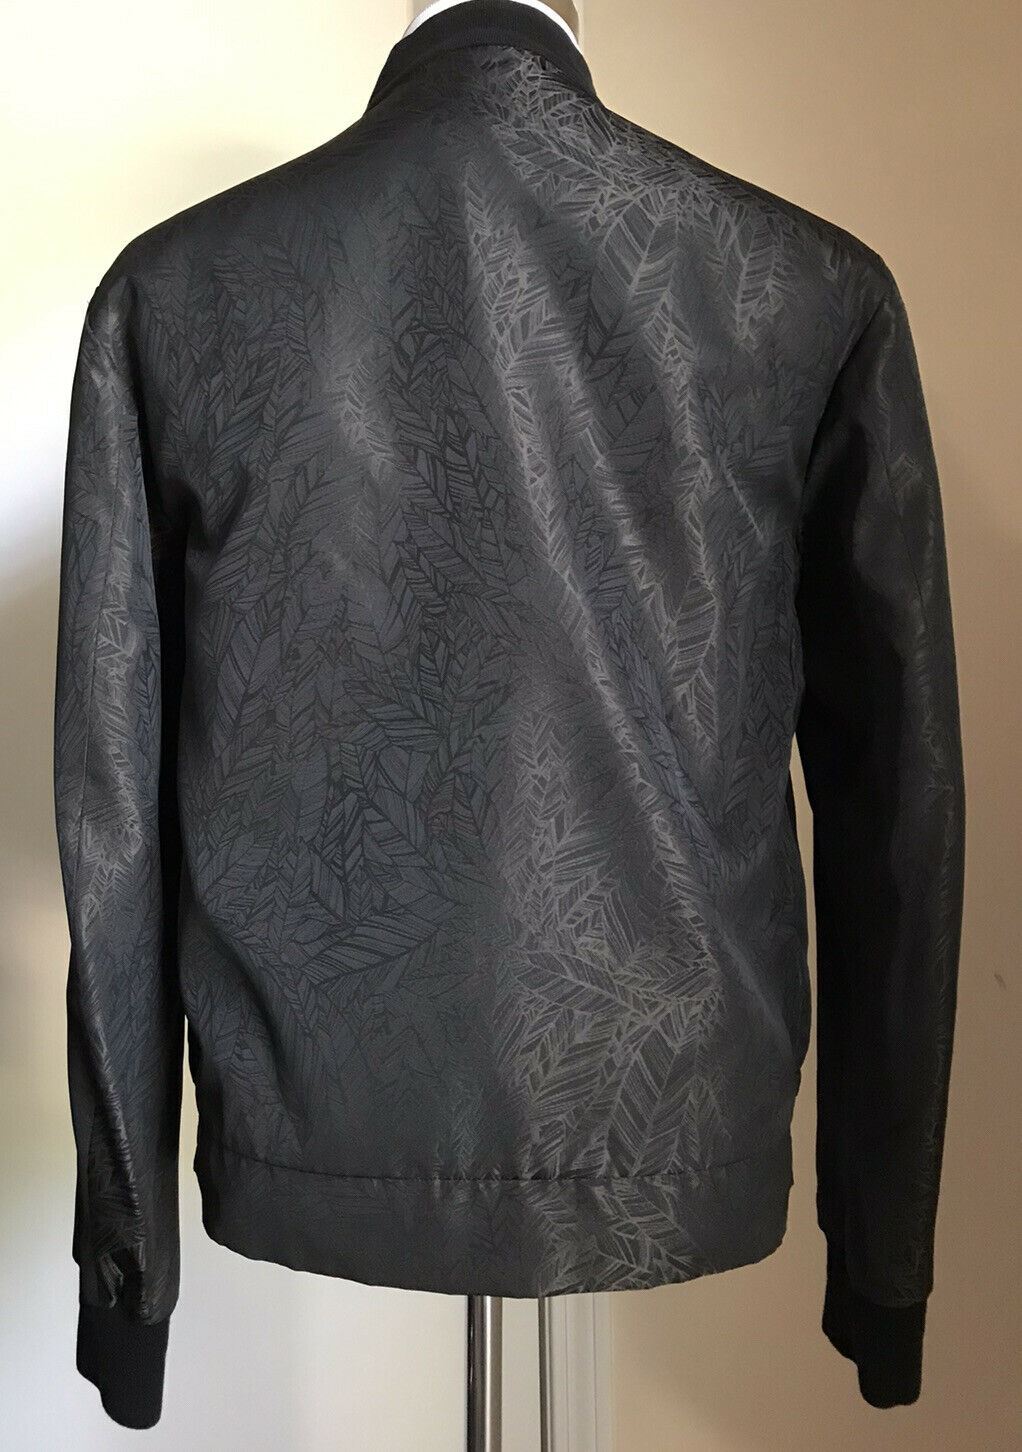 Новая куртка Ermenegildo Zegna Couture за 2295 долларов США (50 евро) DK Black 40 США (50 евро)